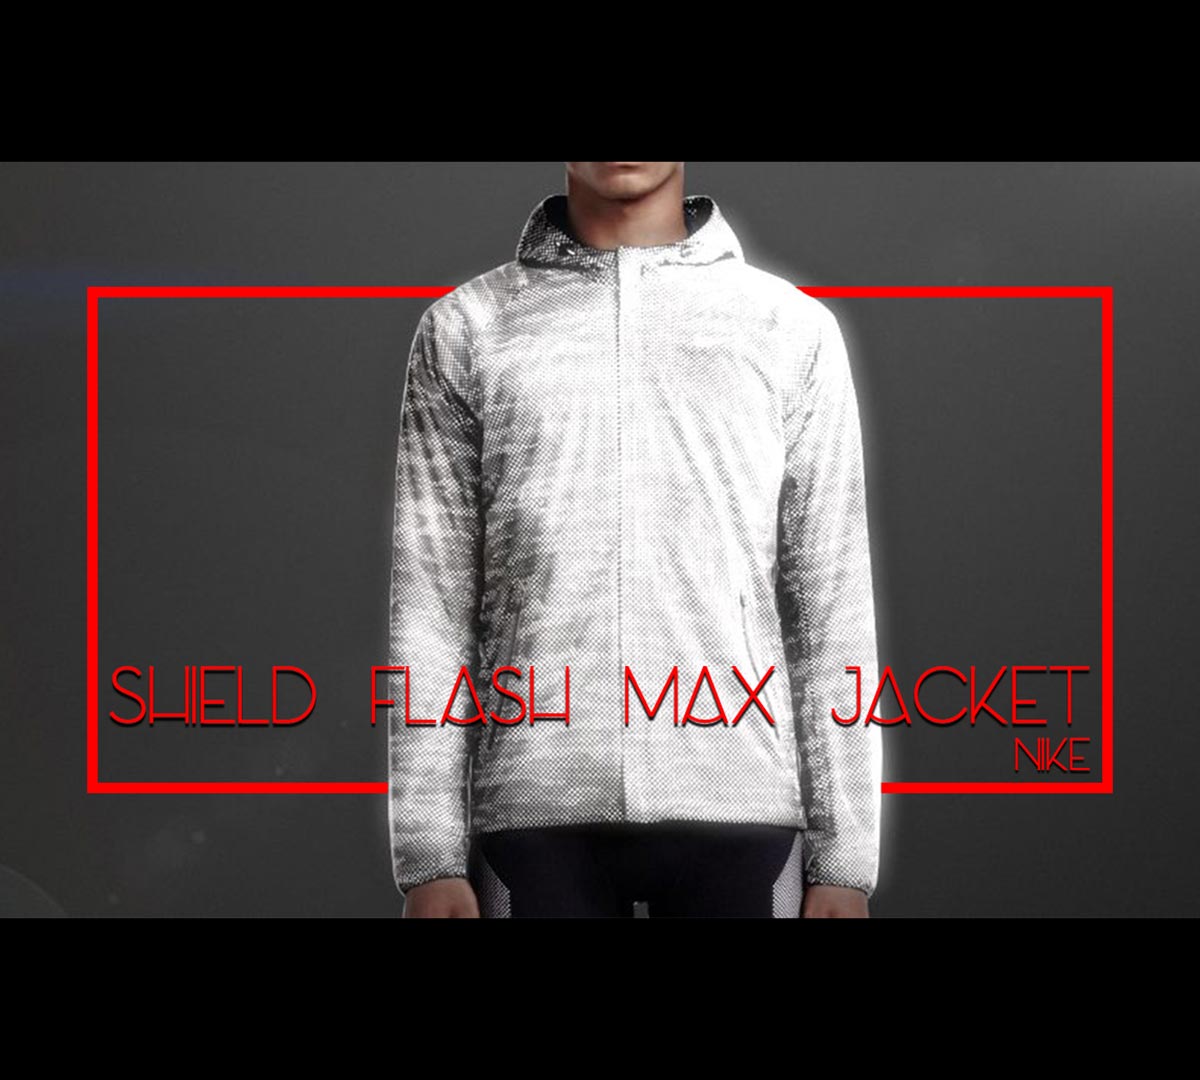 Shield Flash Max Jacket Review |